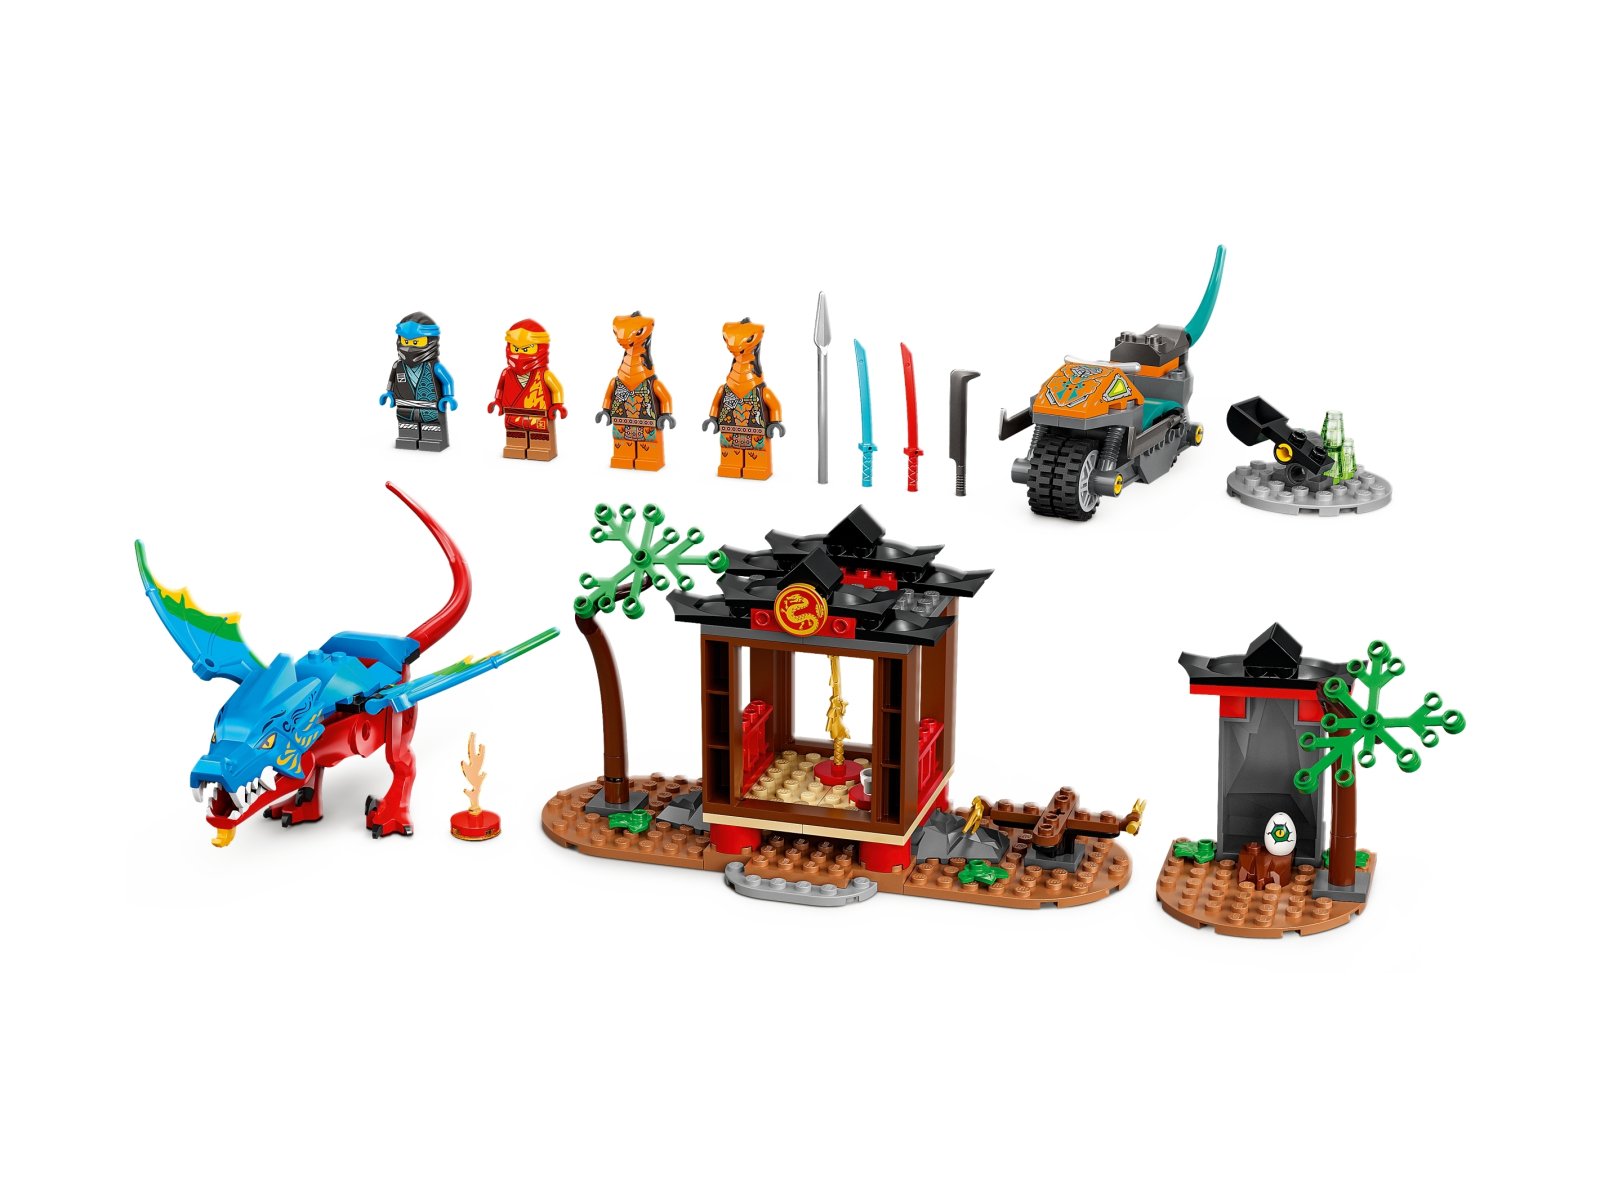 LEGO Ninjago 71759 Świątynia ze smokiem ninja